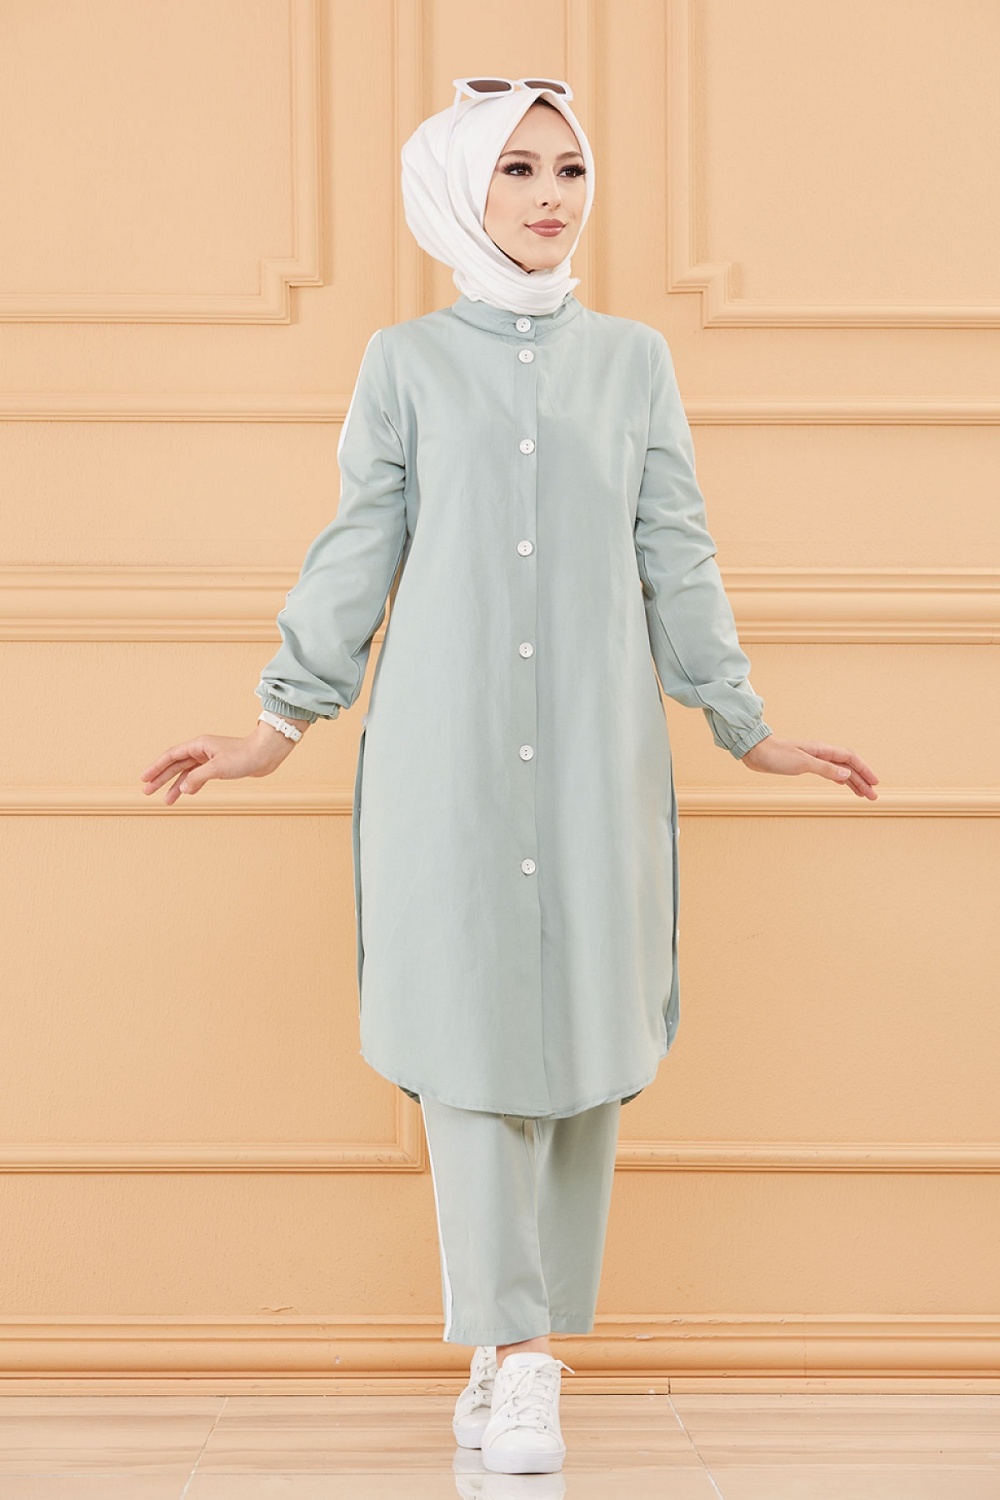 Ensemble décontracté : Tunique boutonnée (chemise longue) et son pantalon  (Vêtement Hijab moderne mastour pour femme) - Couleur menthe